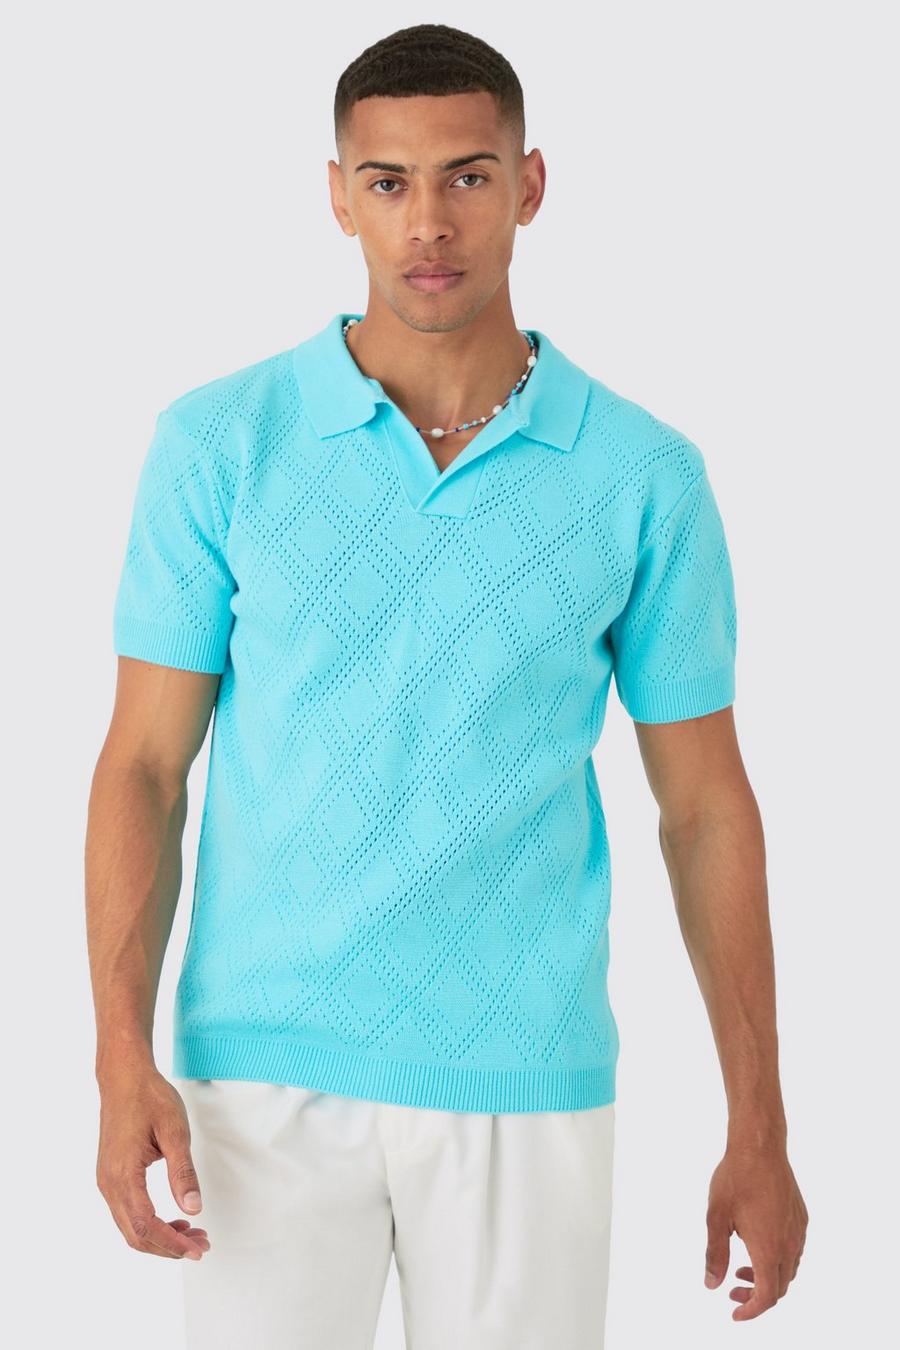 Polo Regular Fit in maglia traforata color acqua con rever, Aqua